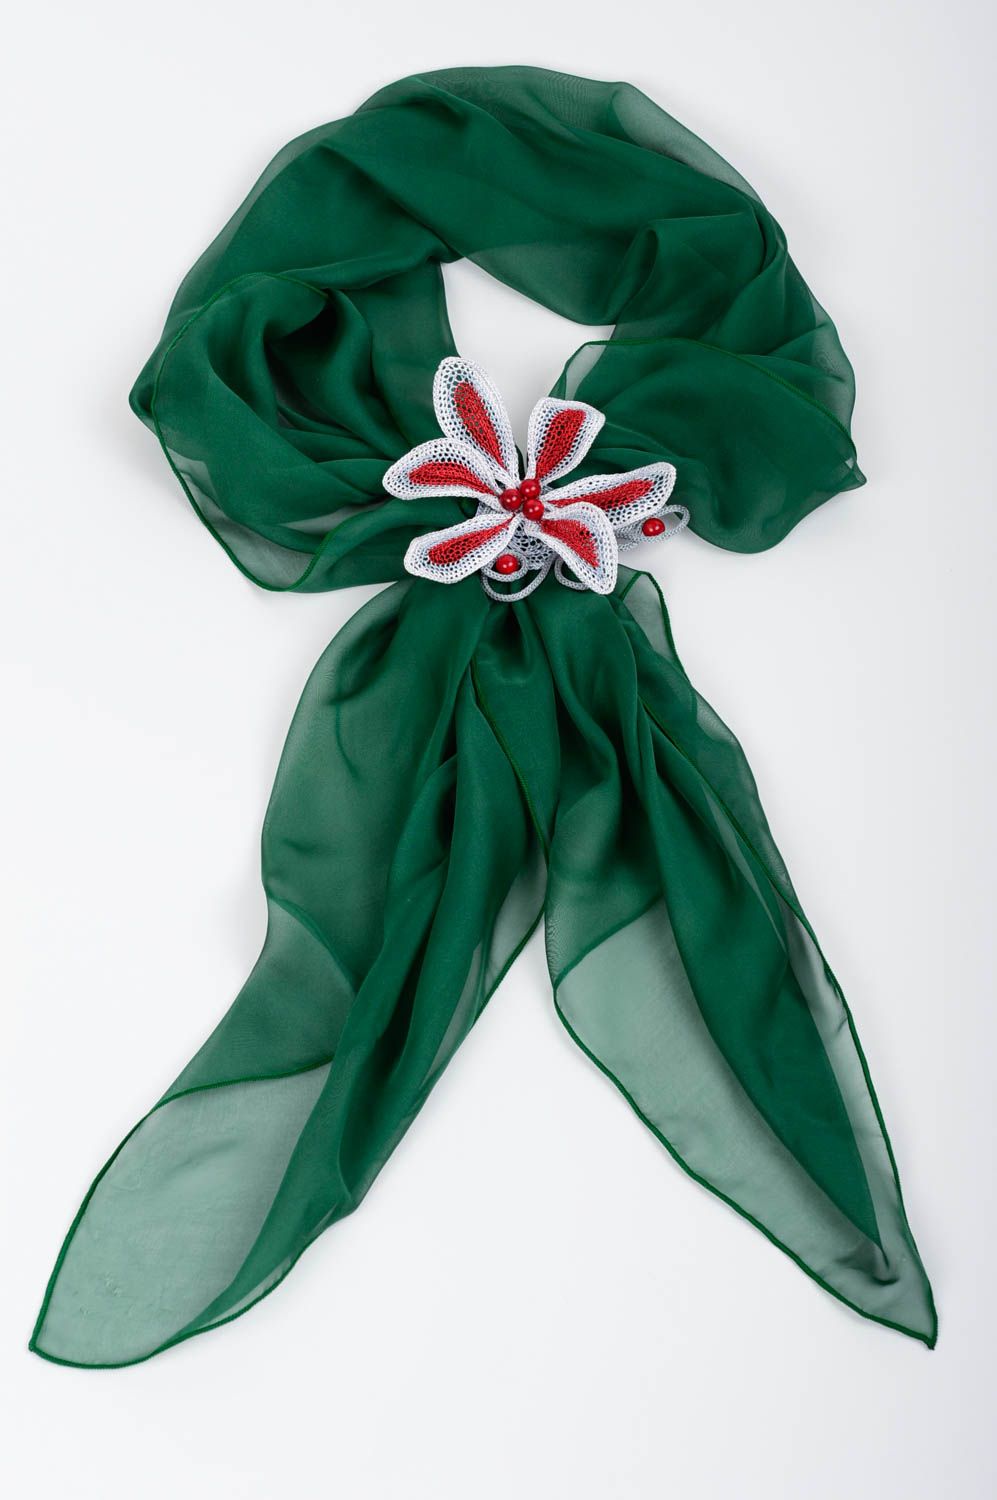 Шарф ожерелье зеленый шарф ручной работы трикотажный шарф оригинальный фото 1